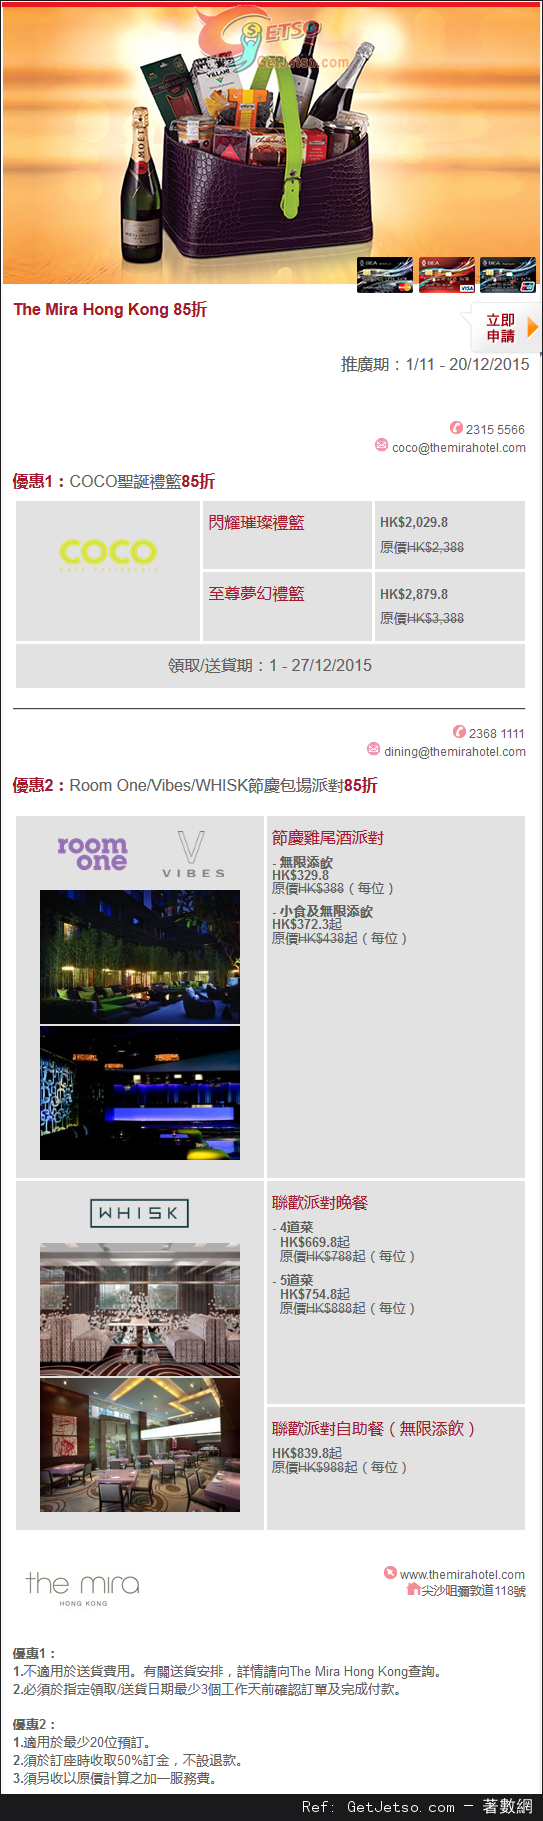 東亞信用卡享The Mira Hong Kong 聖誕禮籃及包場派對85折優惠(至15年12月20日)圖片1